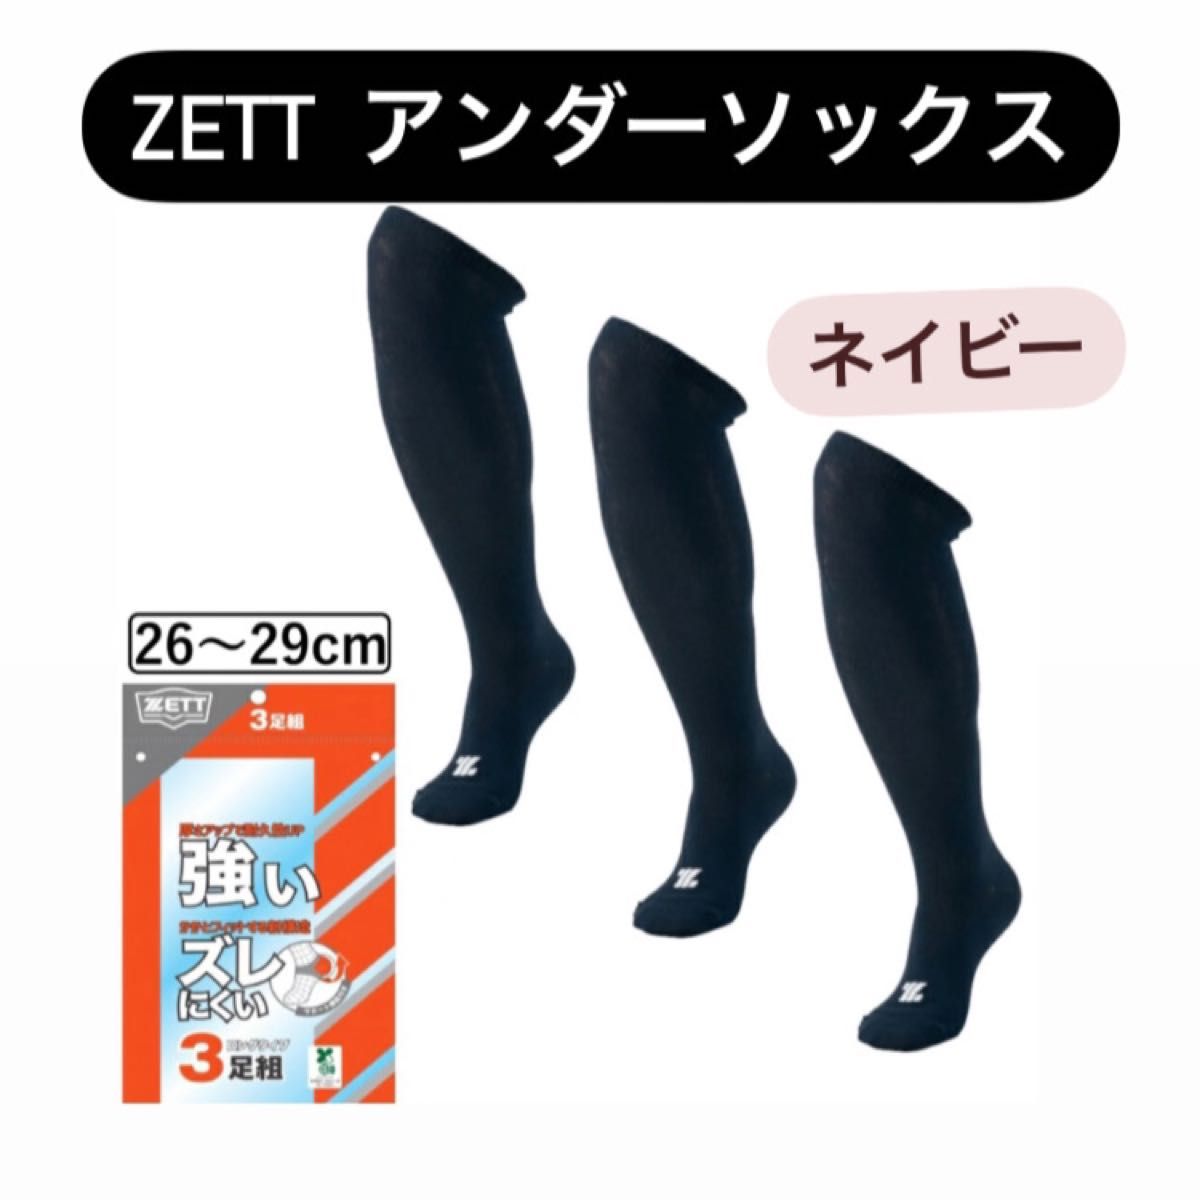 【1セットのみ】 ZETT ゼット 3足セット ネイビー 26-29cm ソックス